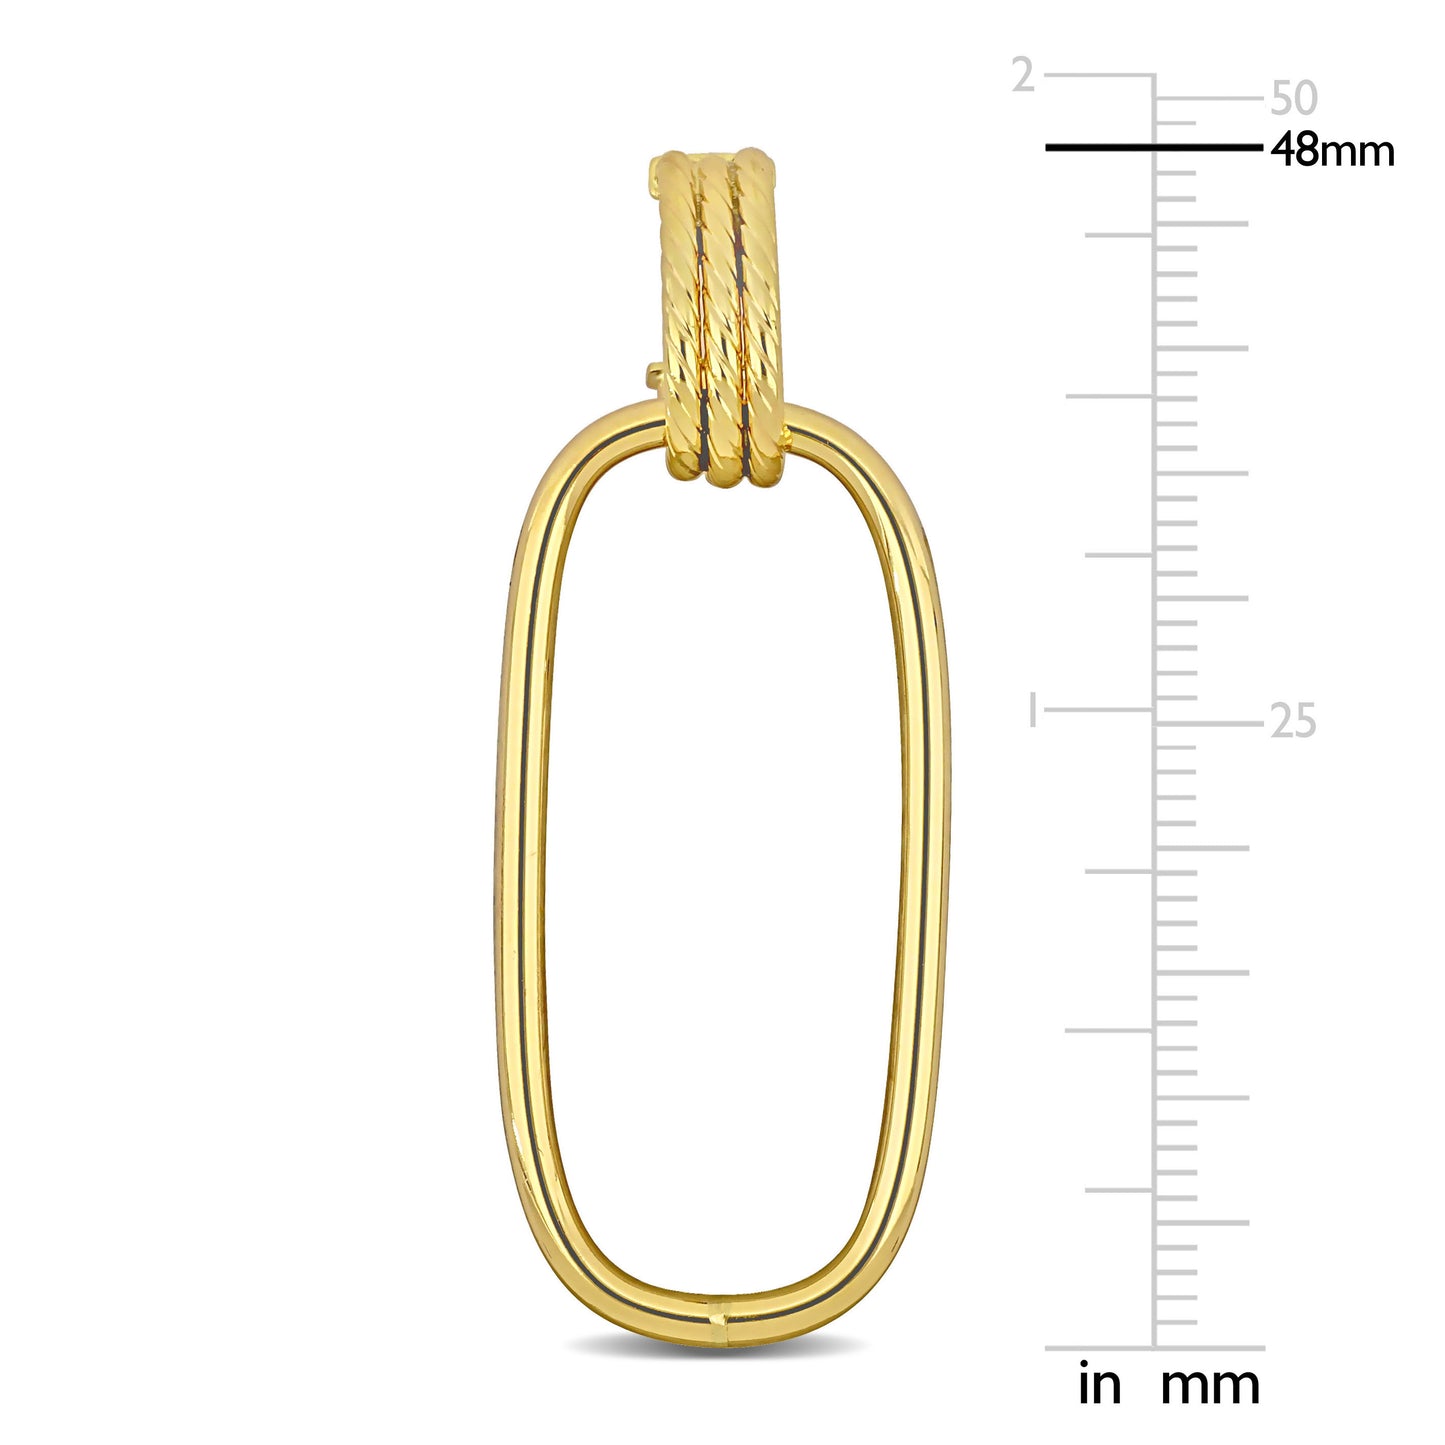 Hanging Hoop Earrings in 10k Yellow Gold